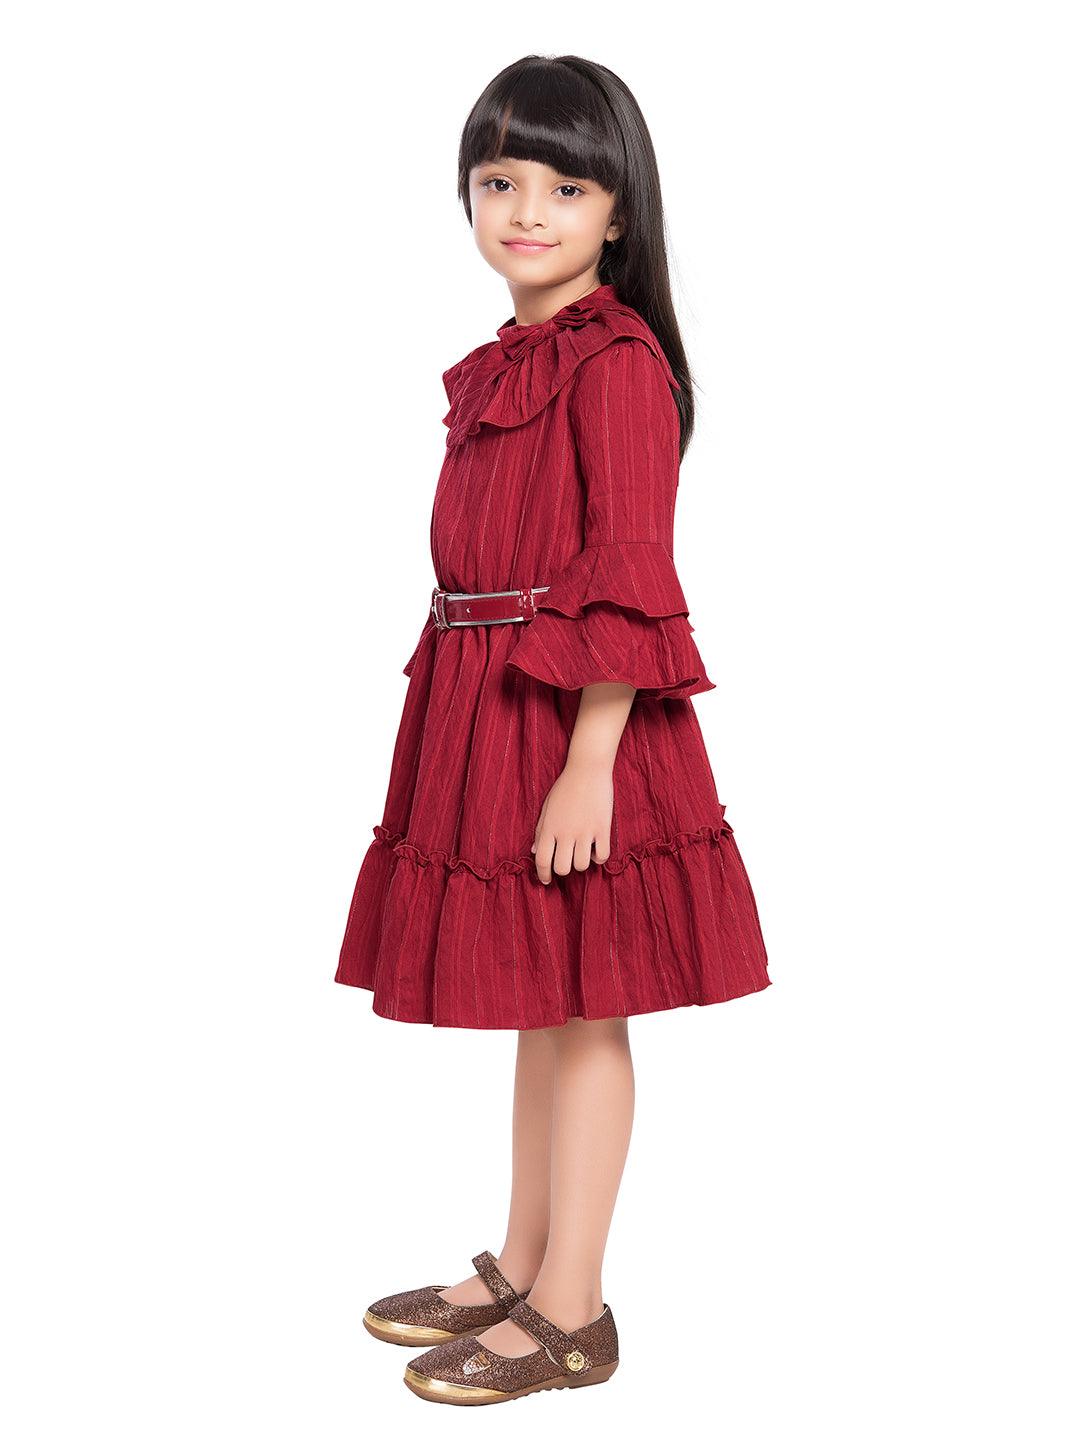 Tiny Baby Maroon Colored Dress - 2060 Maroon - TINY BABY INDIA shop.tinybaby.in